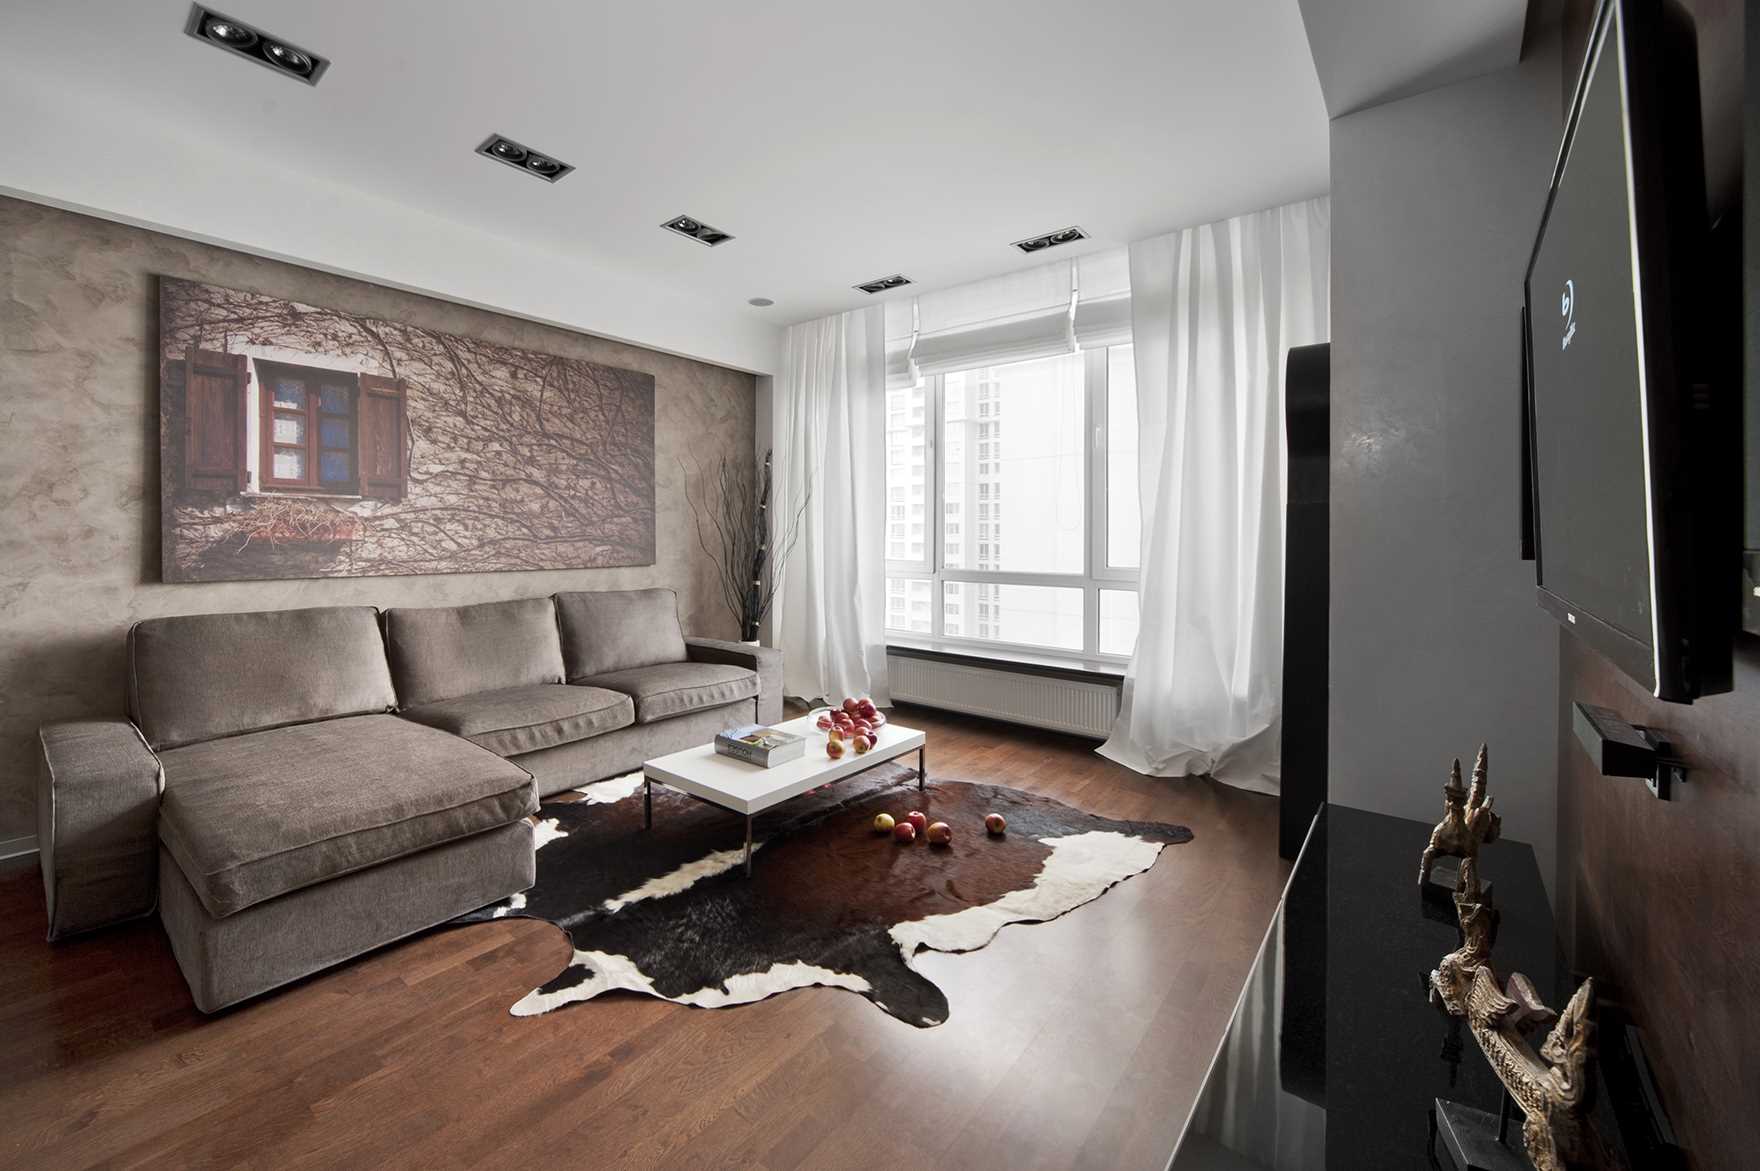 versione degli splendidi interni di un moderno appartamento di 70 mq